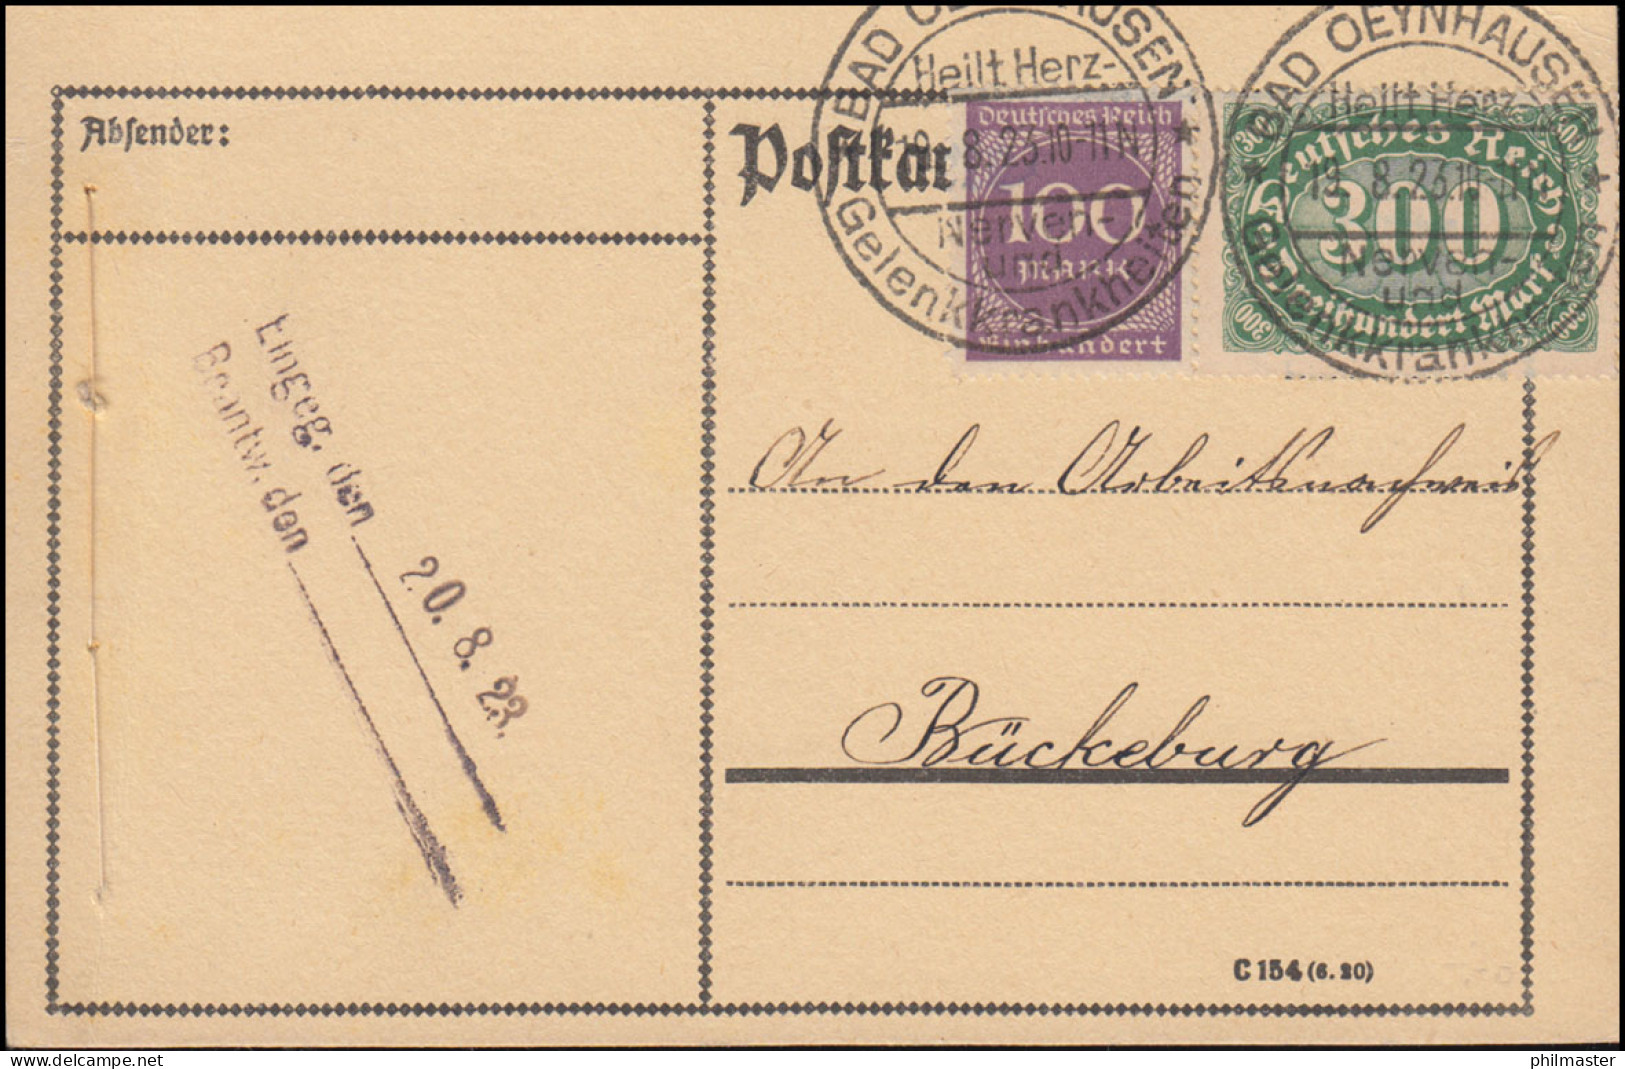 249+268 Infla-MiF Auf Postkarte SSt BAD OEYNHAUSEN 19.8.1923 Nach Bückeburg - Briefe U. Dokumente